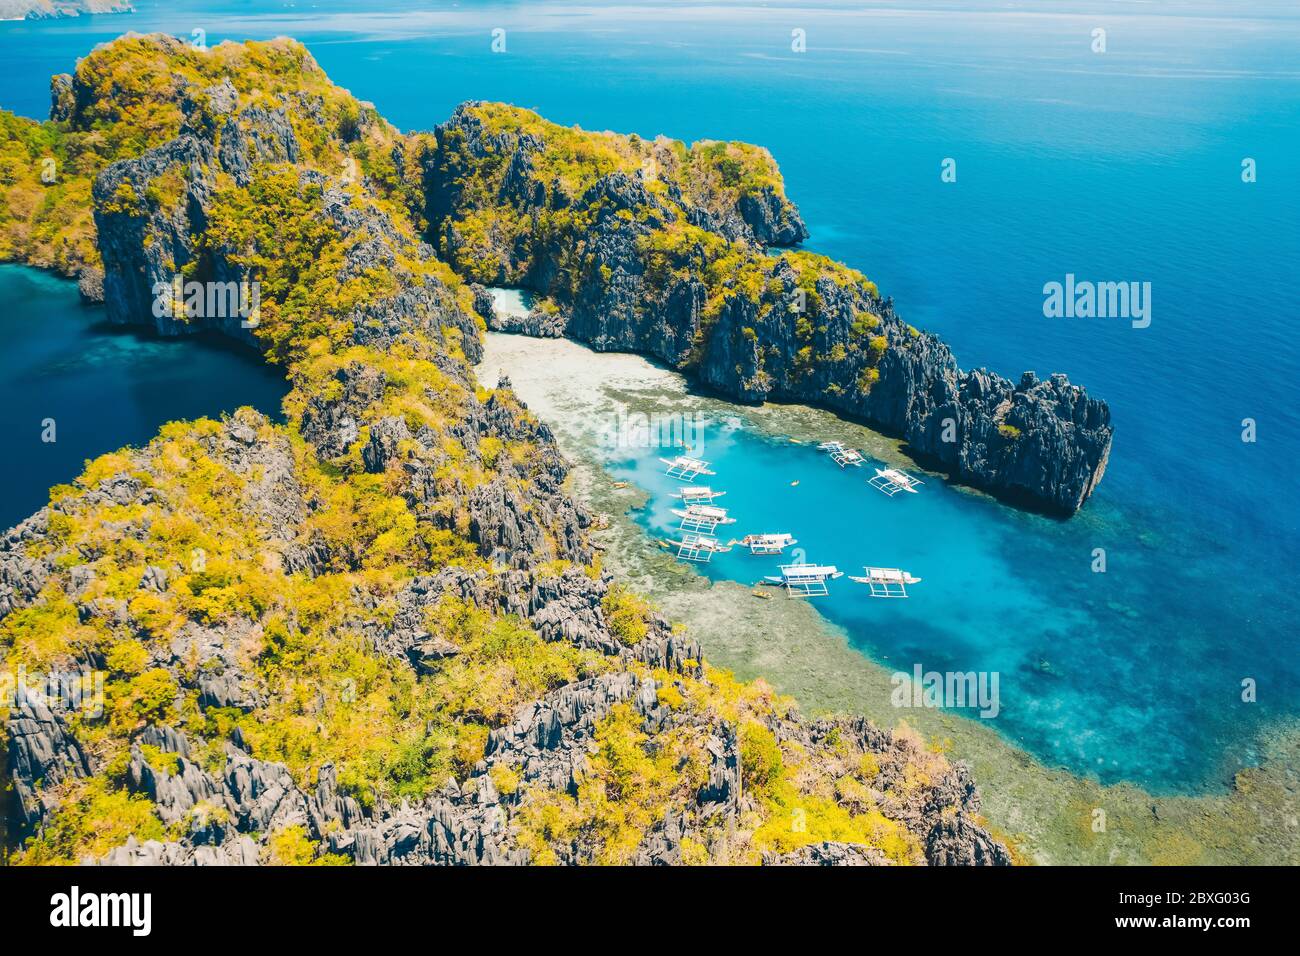 Barche turistiche in tour in grande e laguna, vista aerea. Paesaggio tropicale. El Nido, isola di Palawan, Filippine Foto Stock